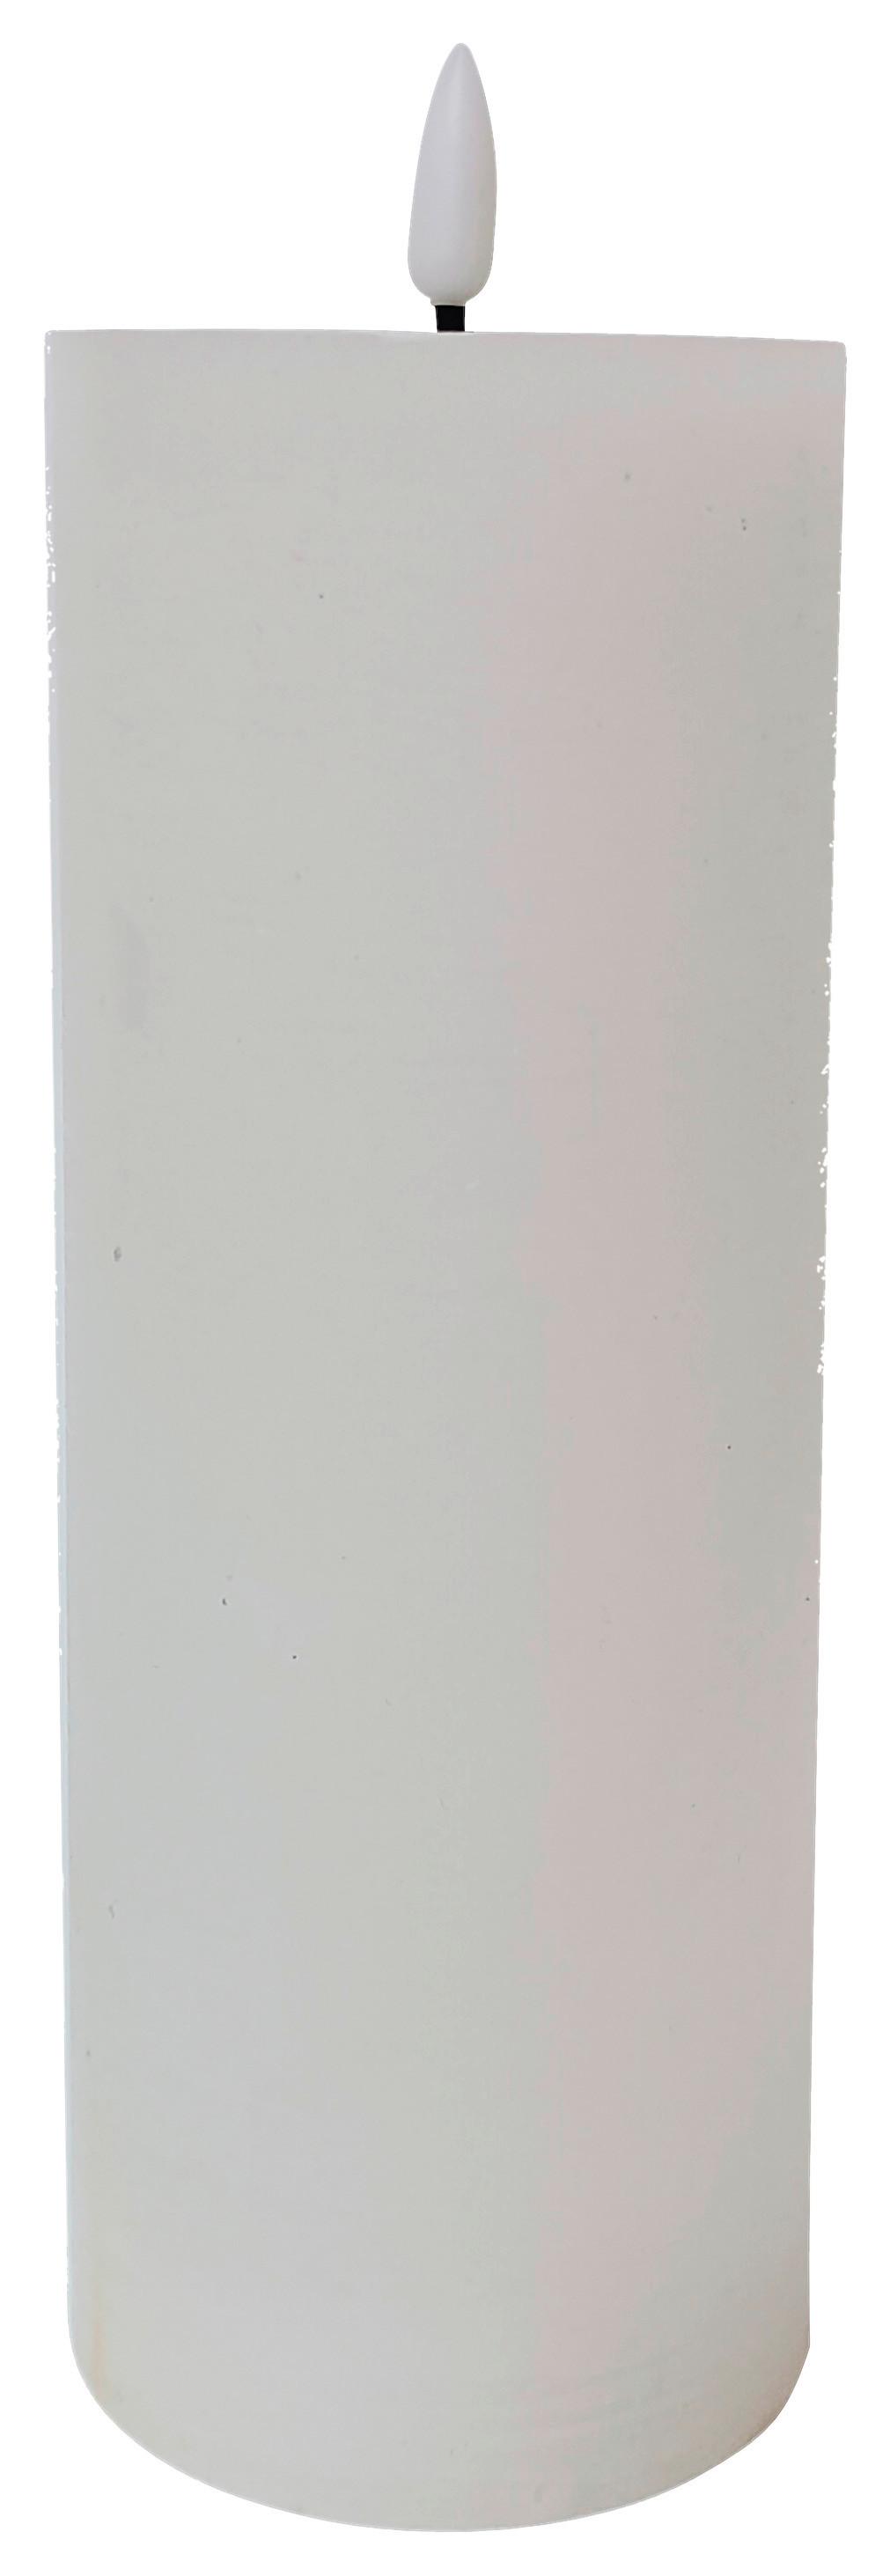 Svíčka S Led Mandy, V: 17,5cm - bílá, plast/přírodní materiály (7,5/17,5cm) - Premium Living